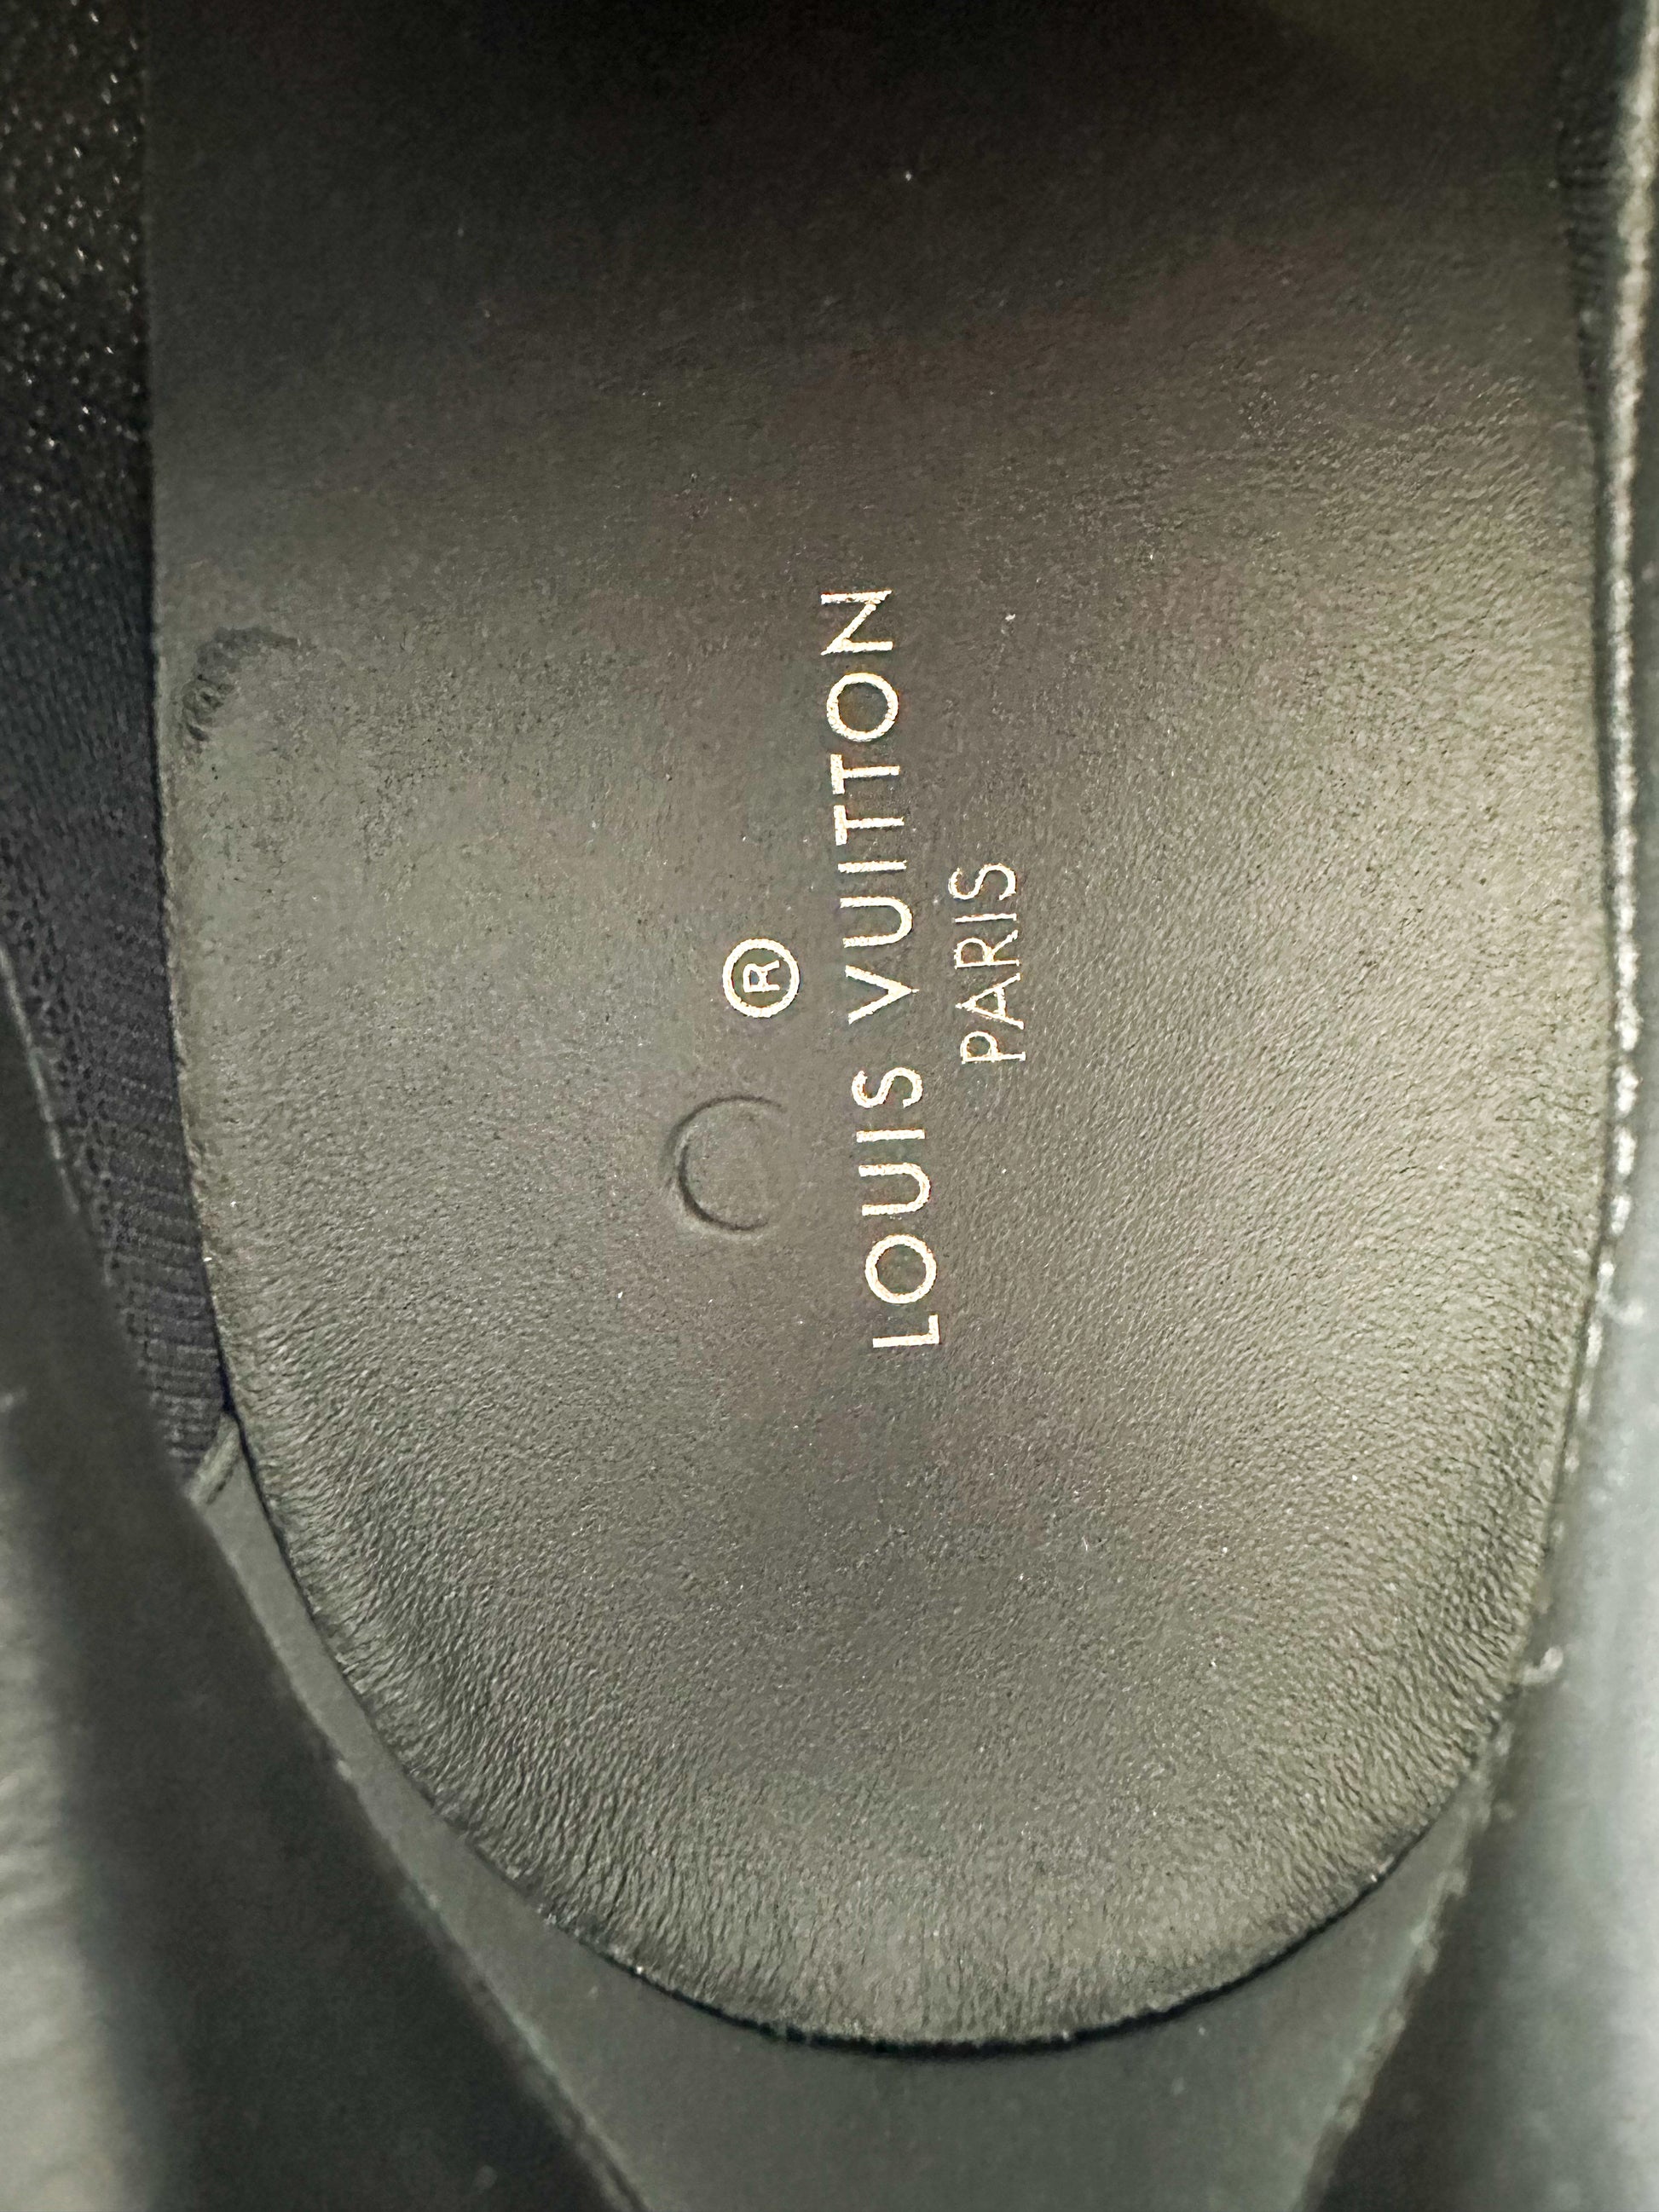 Louis Vuitton, Shoes, Authentic Louis Vuitton Zigzag Silver Blue Sneaker  Size